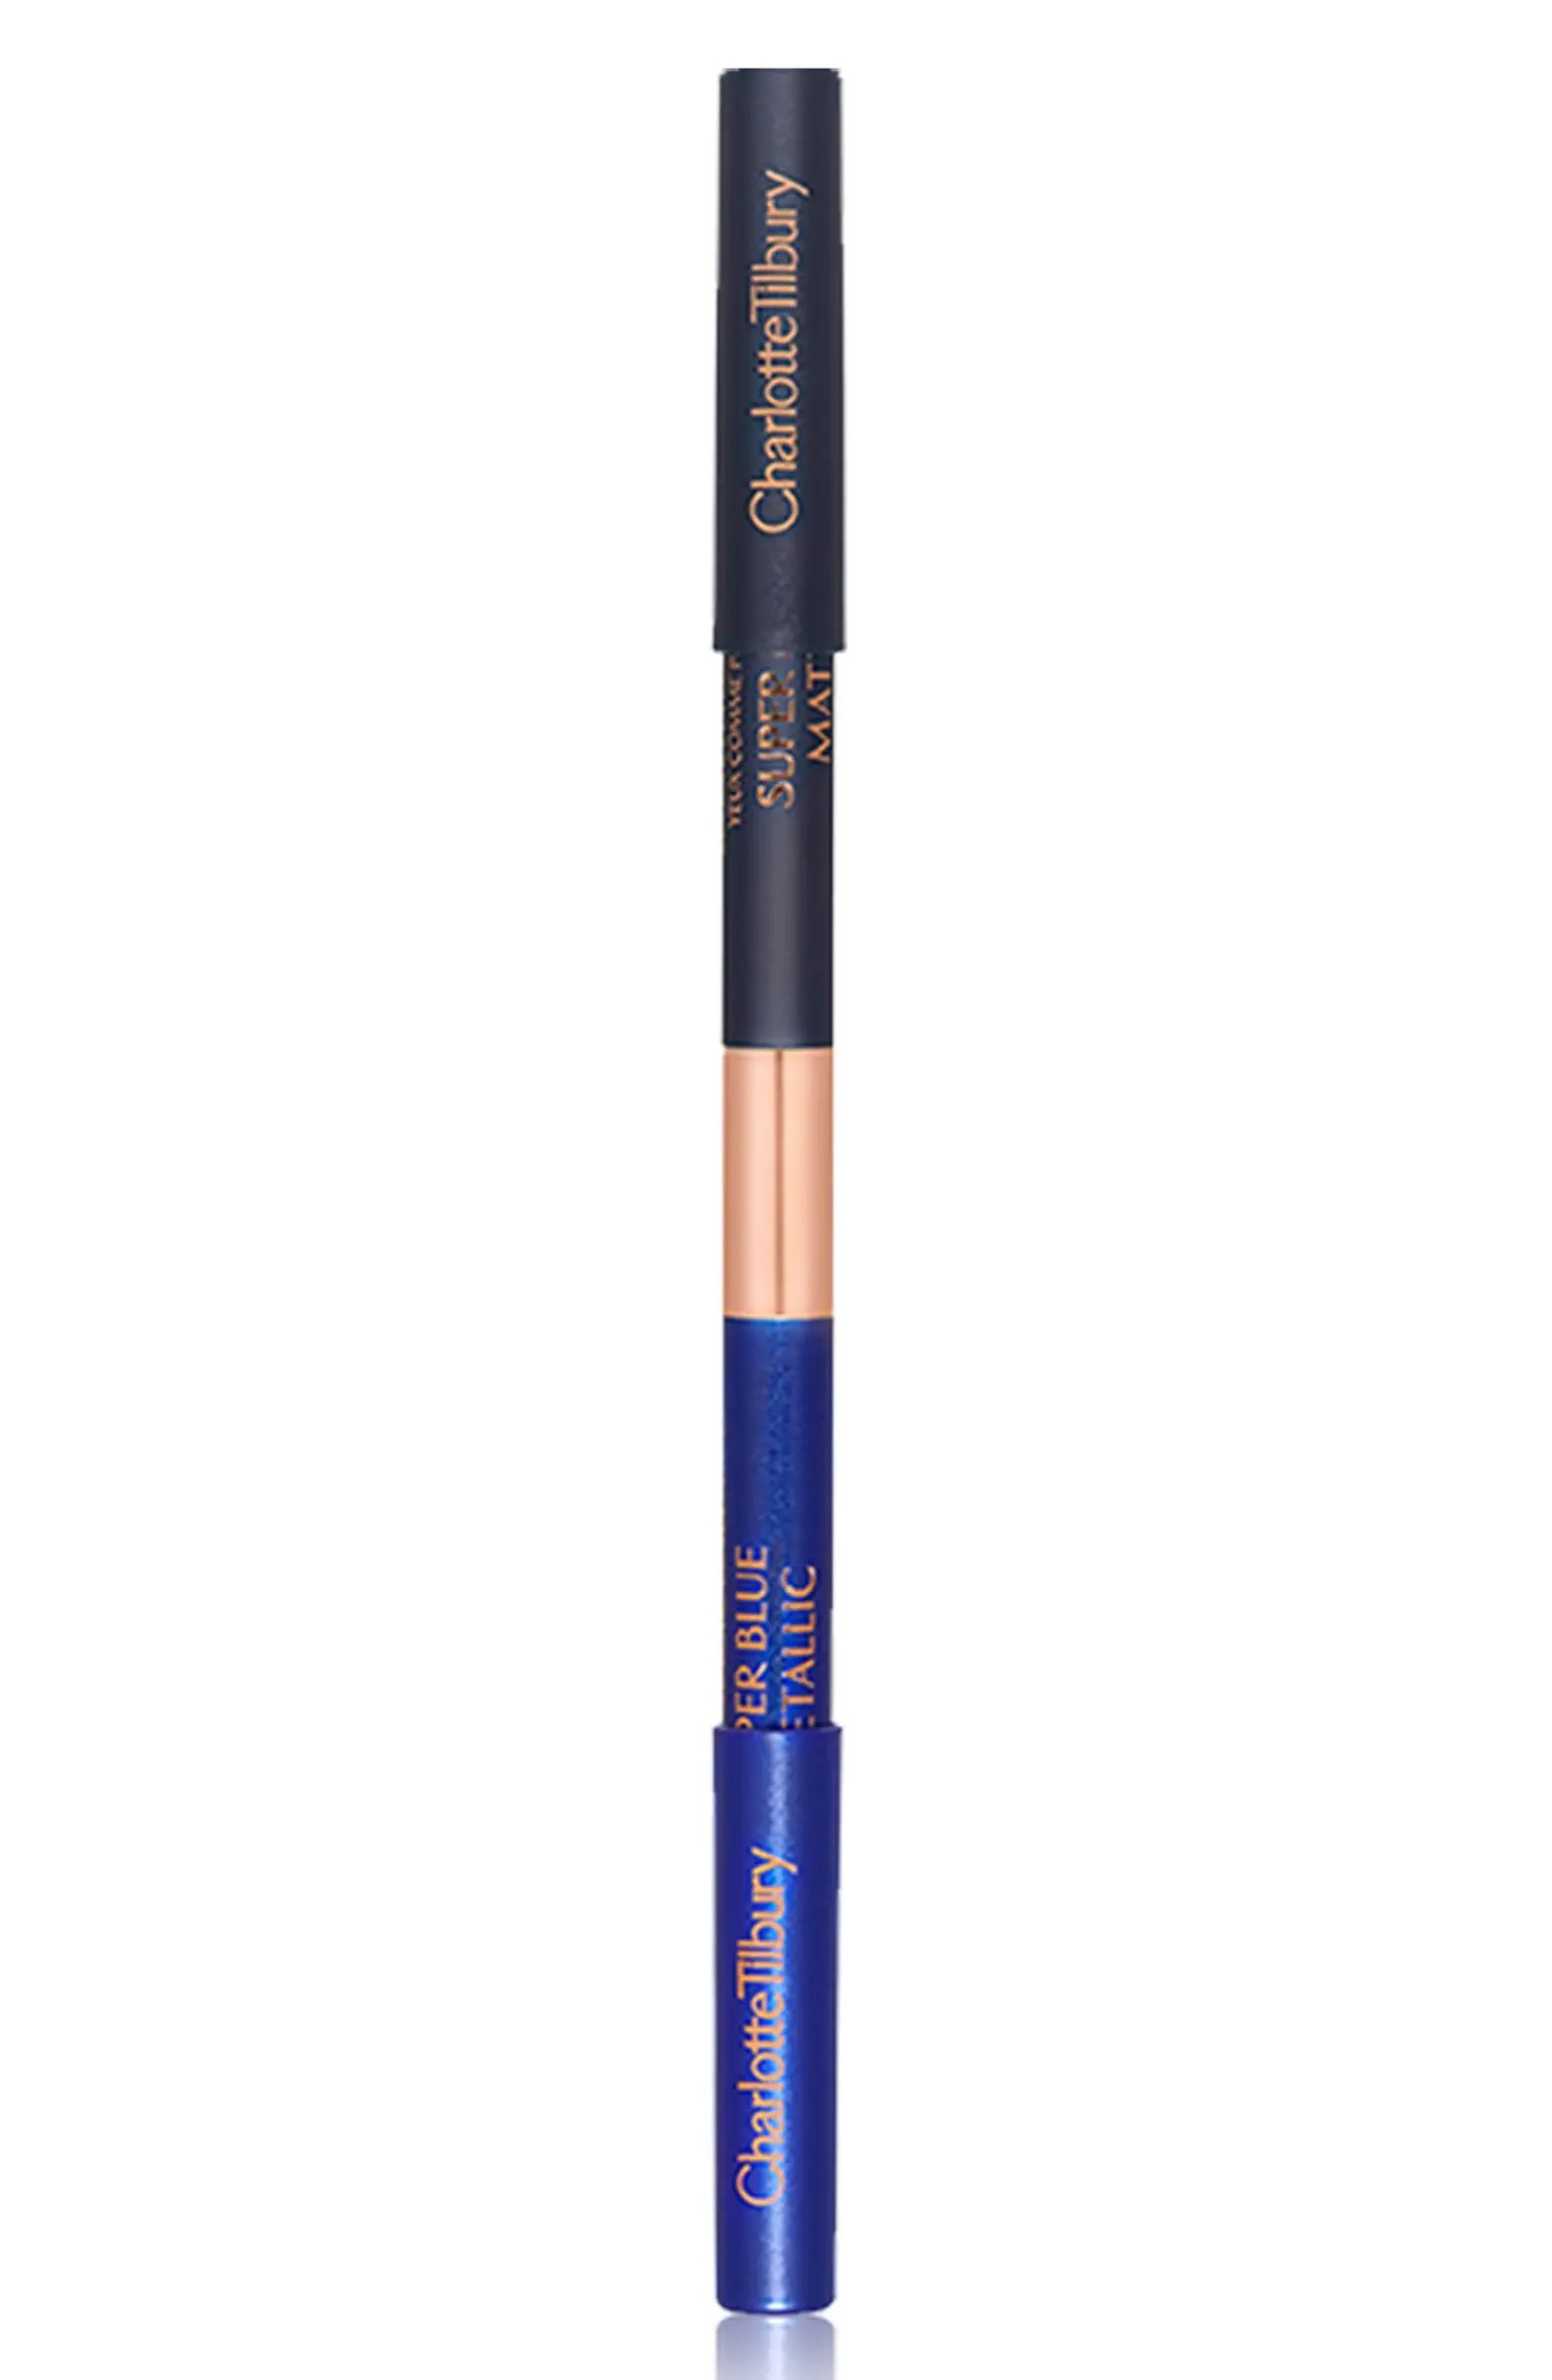 Eye Color Magic Eyeliner Pencil Duo | Nordstrom